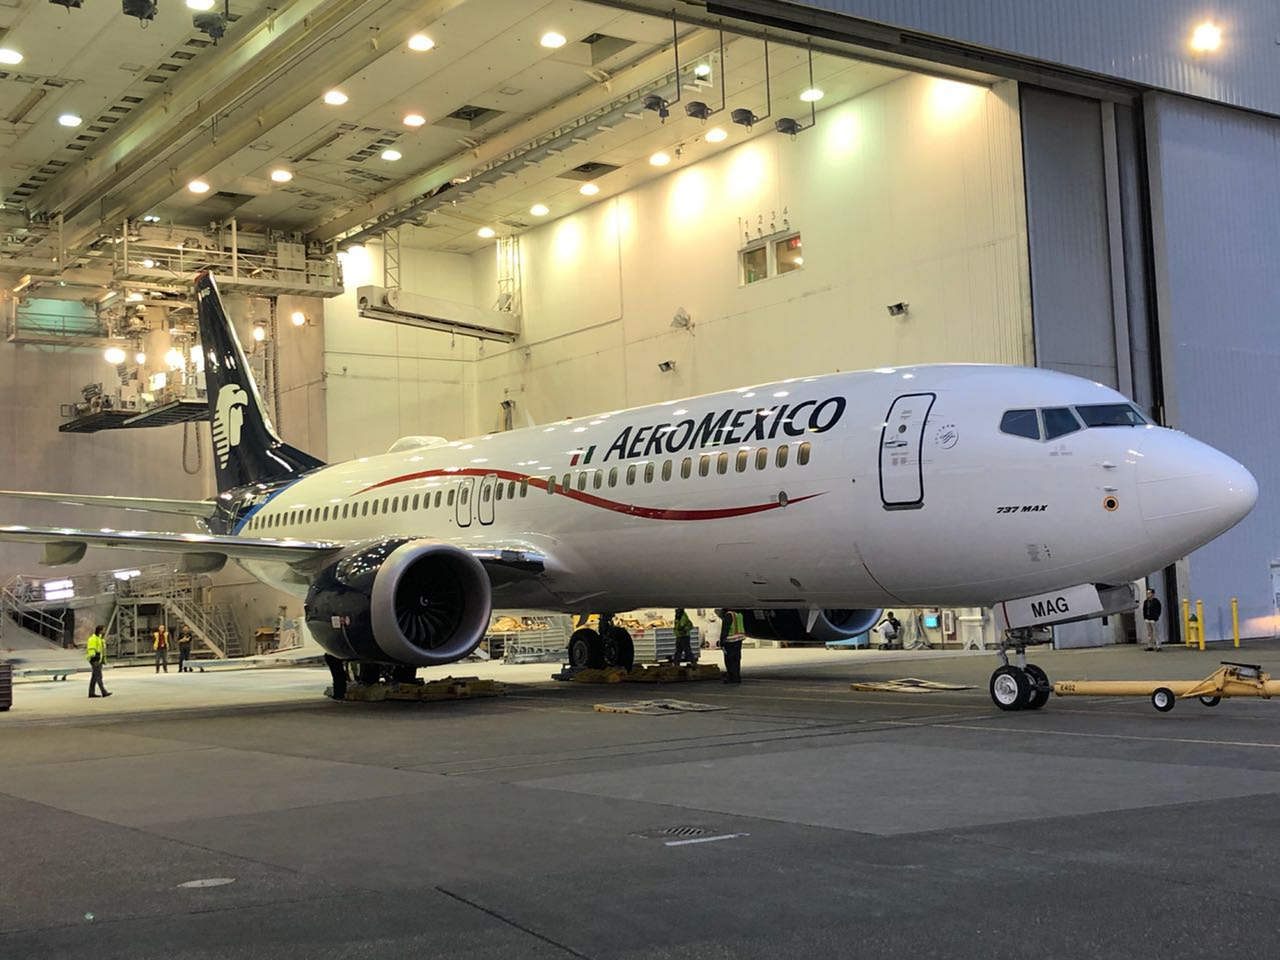 Aeroméxico anunció que debido al impacto por el precio del turbosina y otras pérdidas, retirará cinco aviones de su flota y suspenderá nueve rutas nacionales e internacionales durante el próximo año. (ARCHIVO)